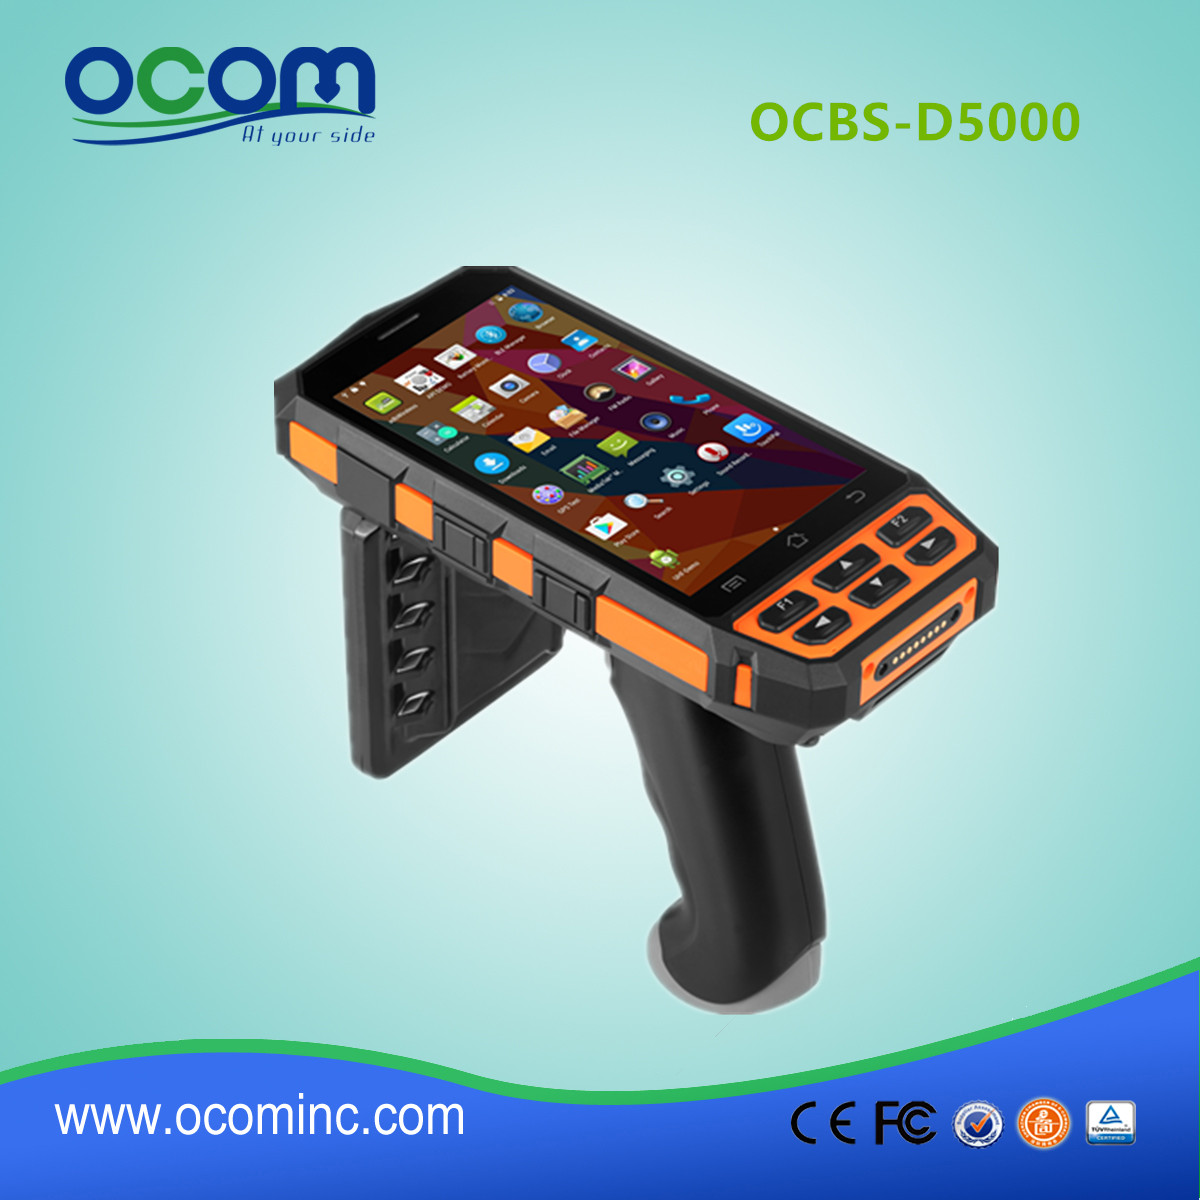 OCBS-D5000 φορητό κινητό τερματικό συλλέκτη δεδομένων Android